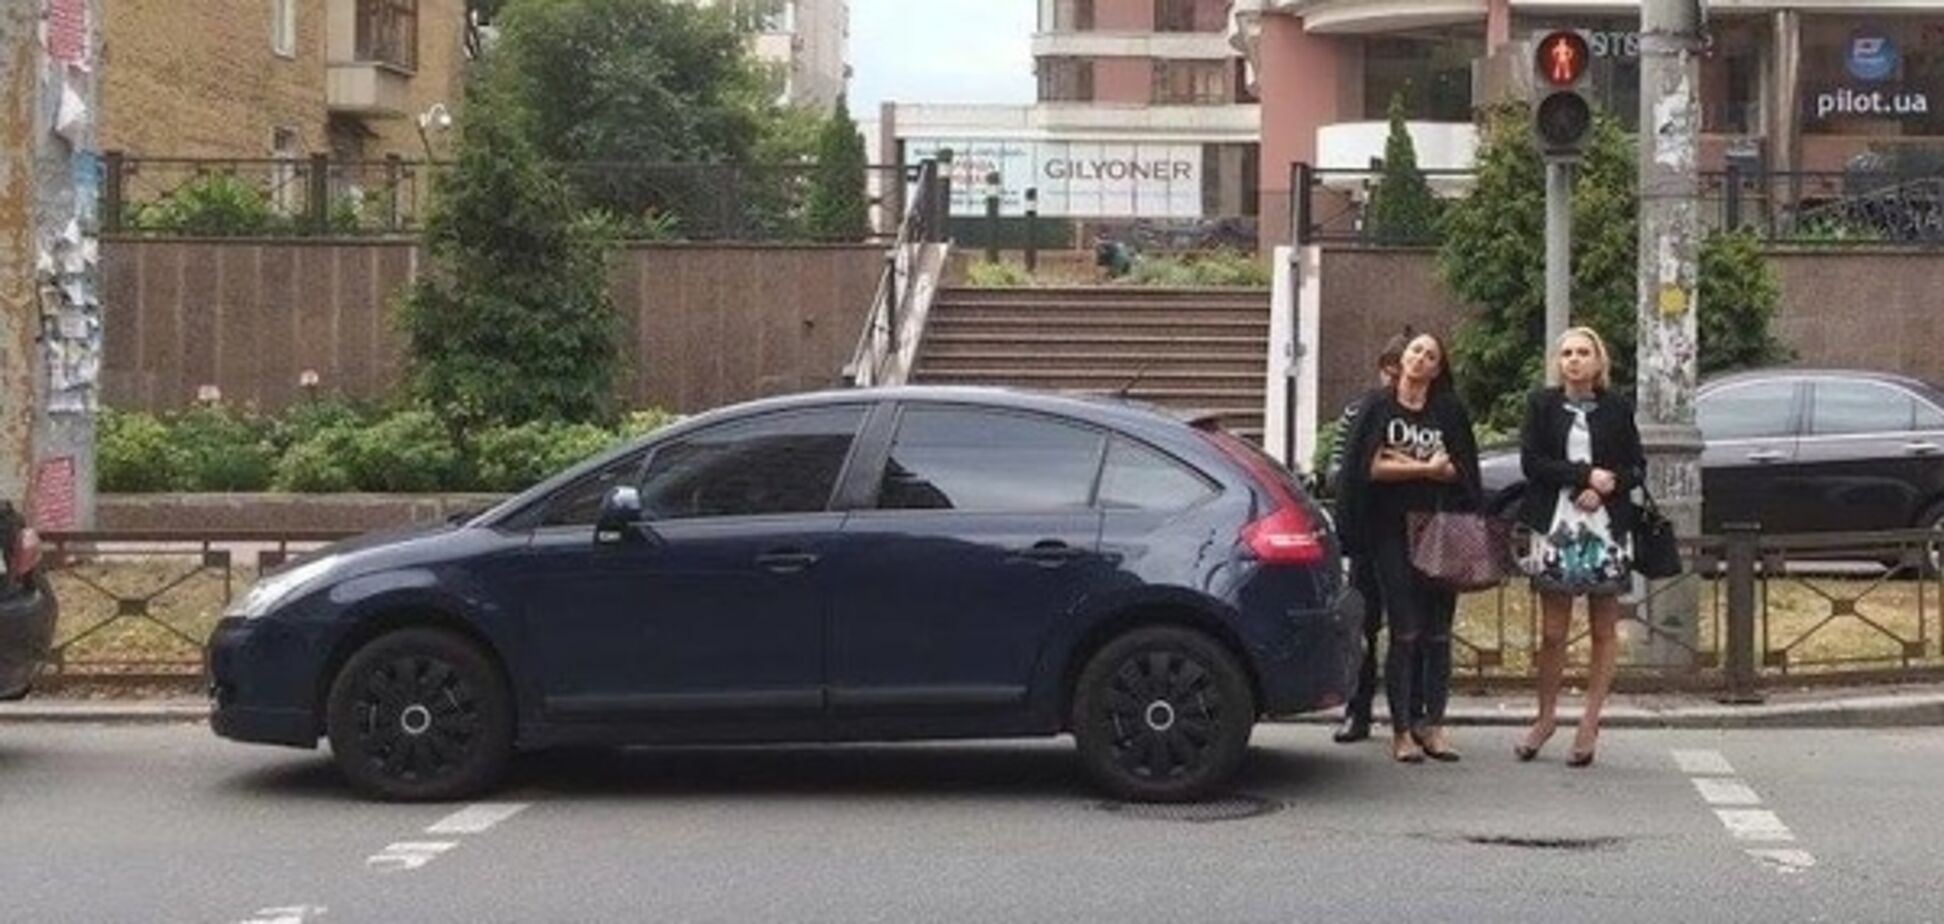 'Королева парковки' заставила киевлян обходить свое авто